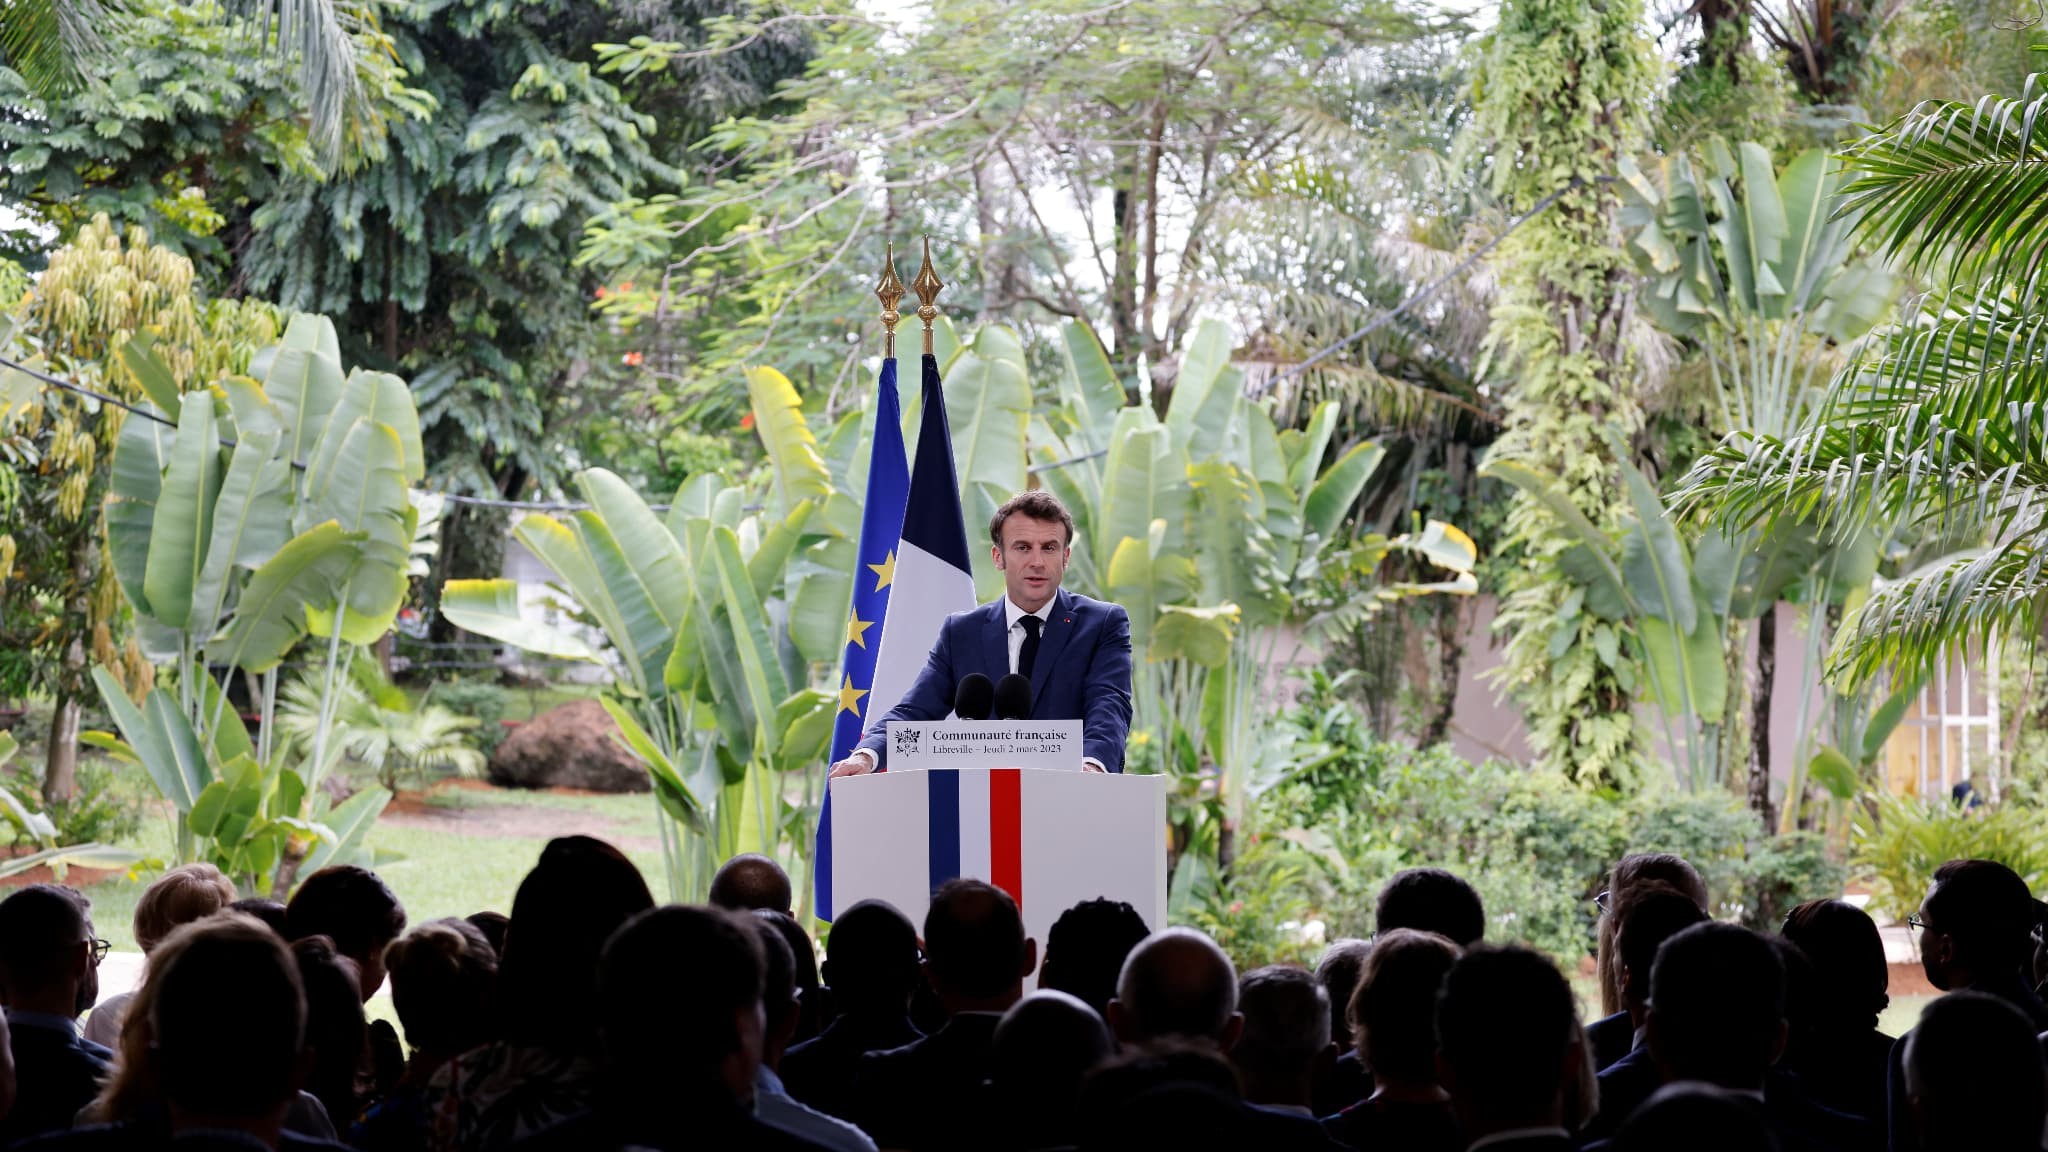 Tổng thống Pháp tuyên bố: Kỷ nguyên can thiệp của Paris ở châu Phi đã qua. (Nguồn: BFMTV)